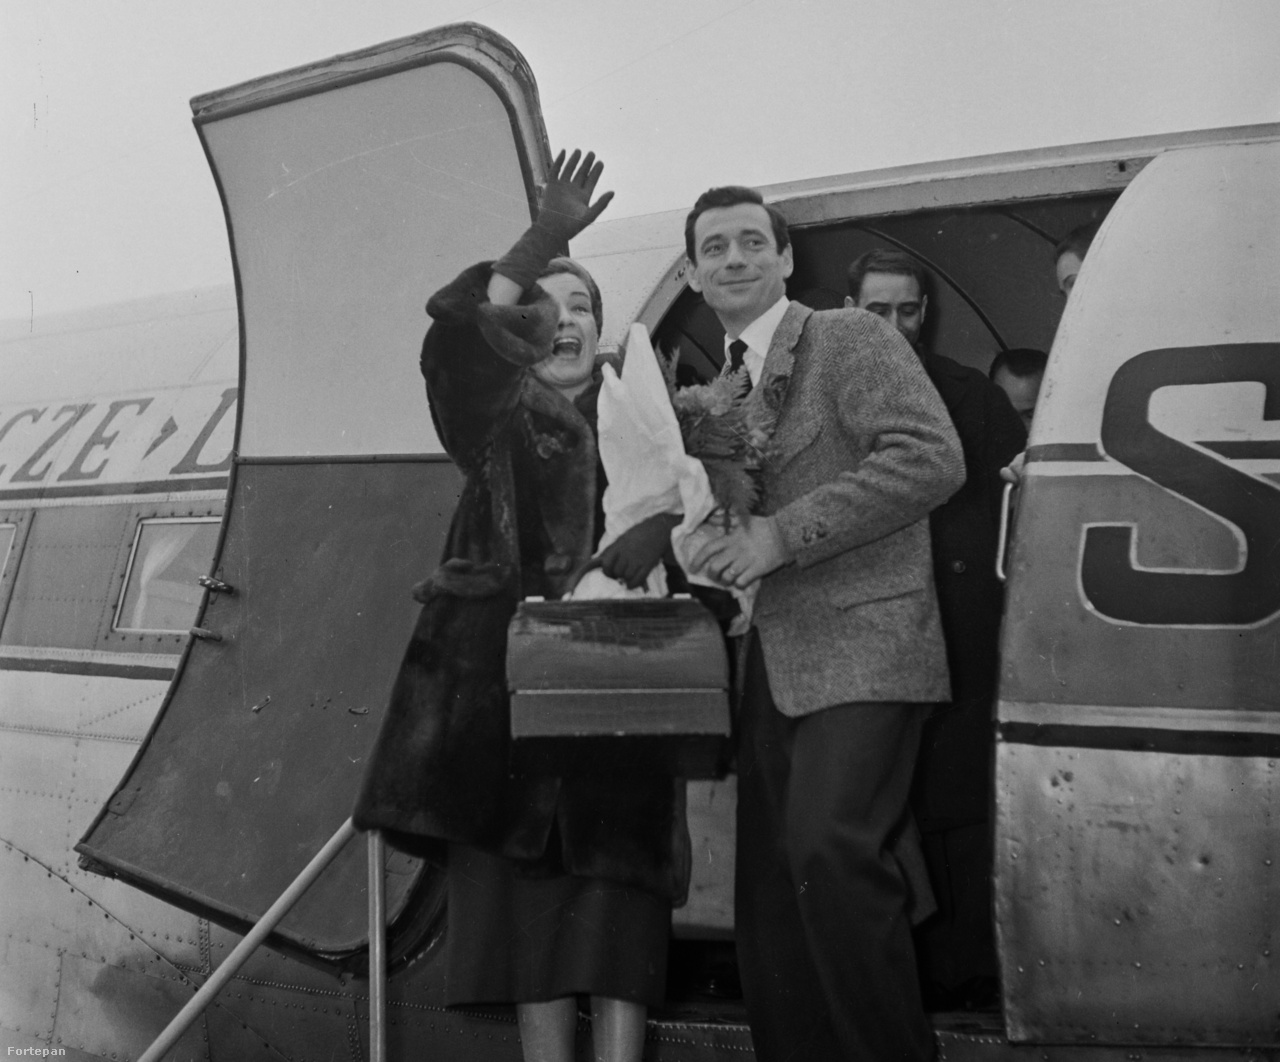 1957: Magyarországra látogatott Simone Signoret színművésznő és férje, Yves Montand sanzonénekes és filmszínész. A francia sztárházaspár a lengyel légitársaság (LOT) Liszunov Li-2 típusú repülőgépével érkezett a magyar főváros repülőterére.